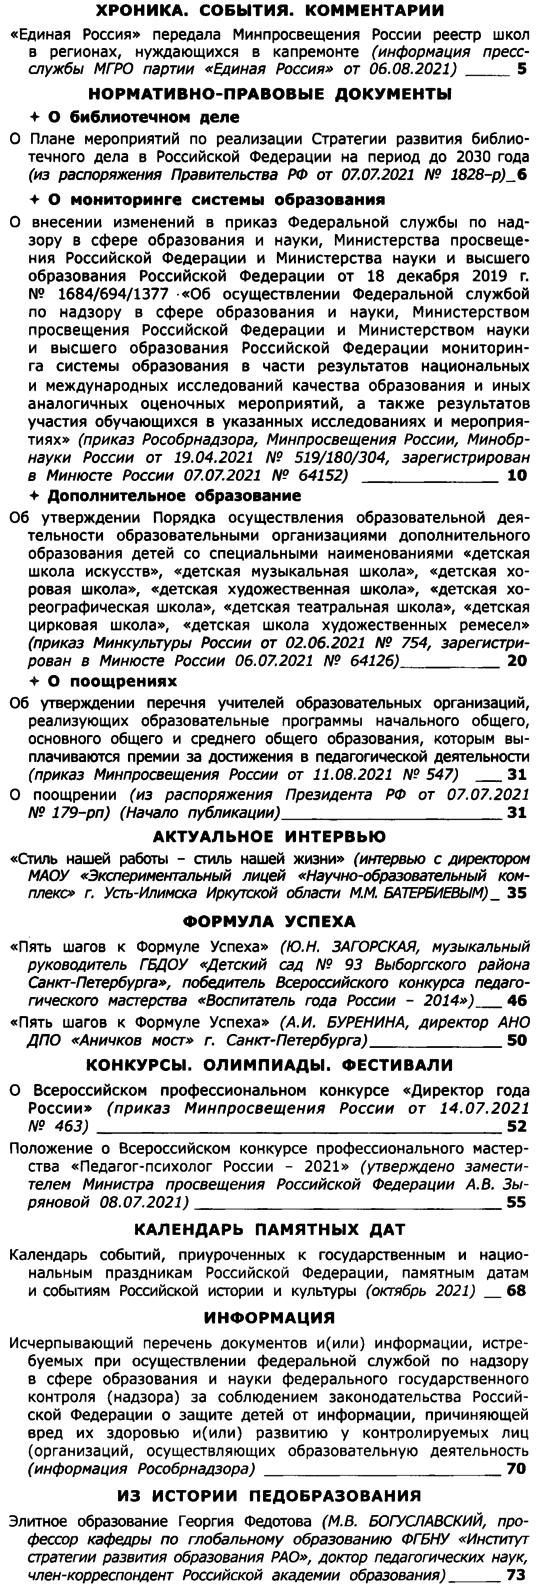 Вестник образования России 2021-18.png